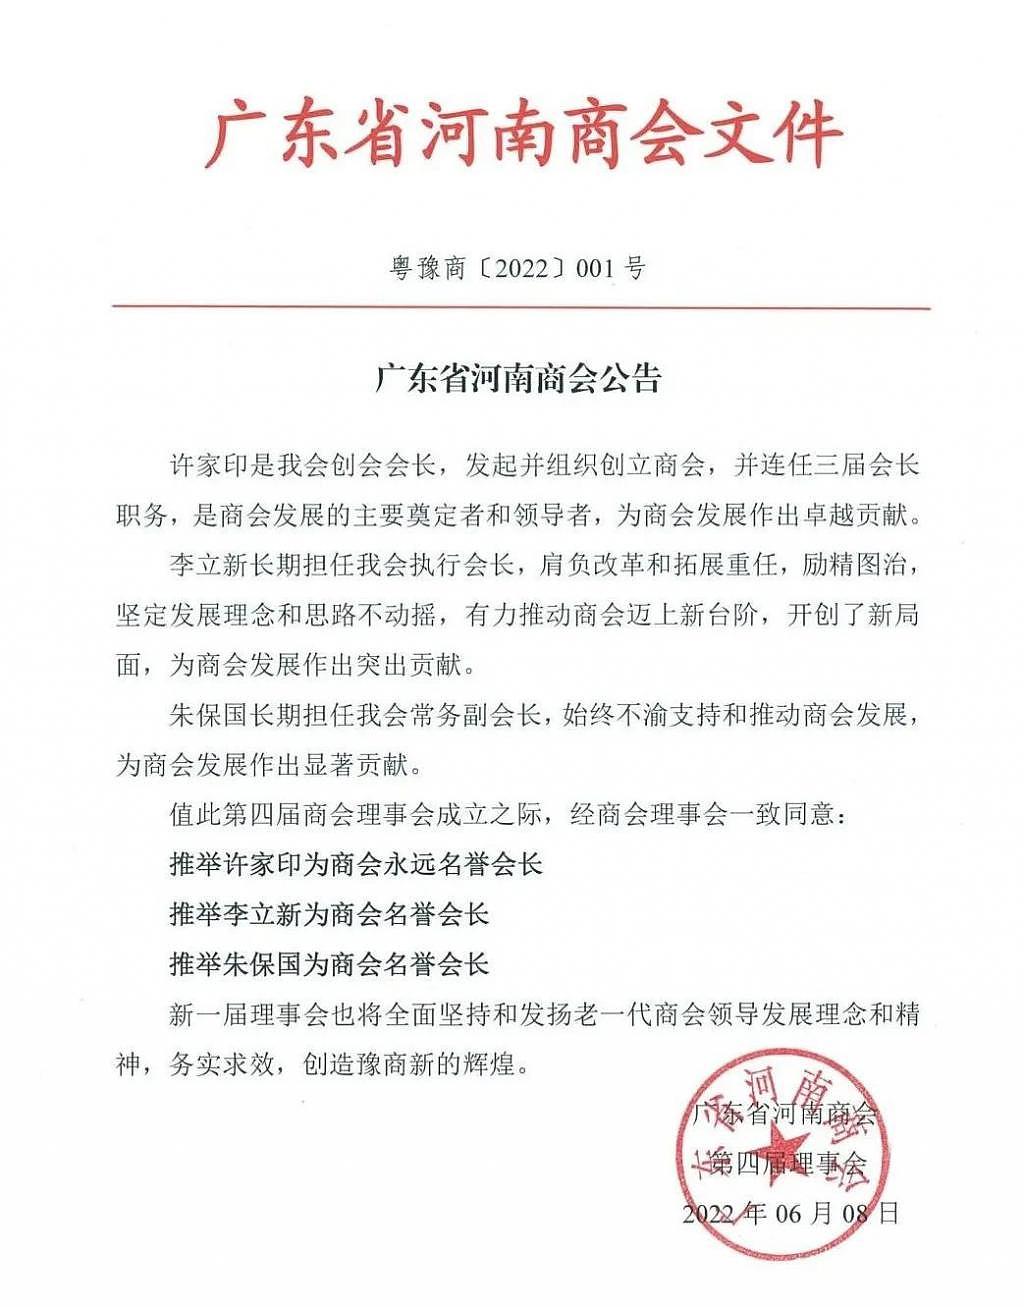 许家印被广东省河南商会推举为永远名誉会长 - 1